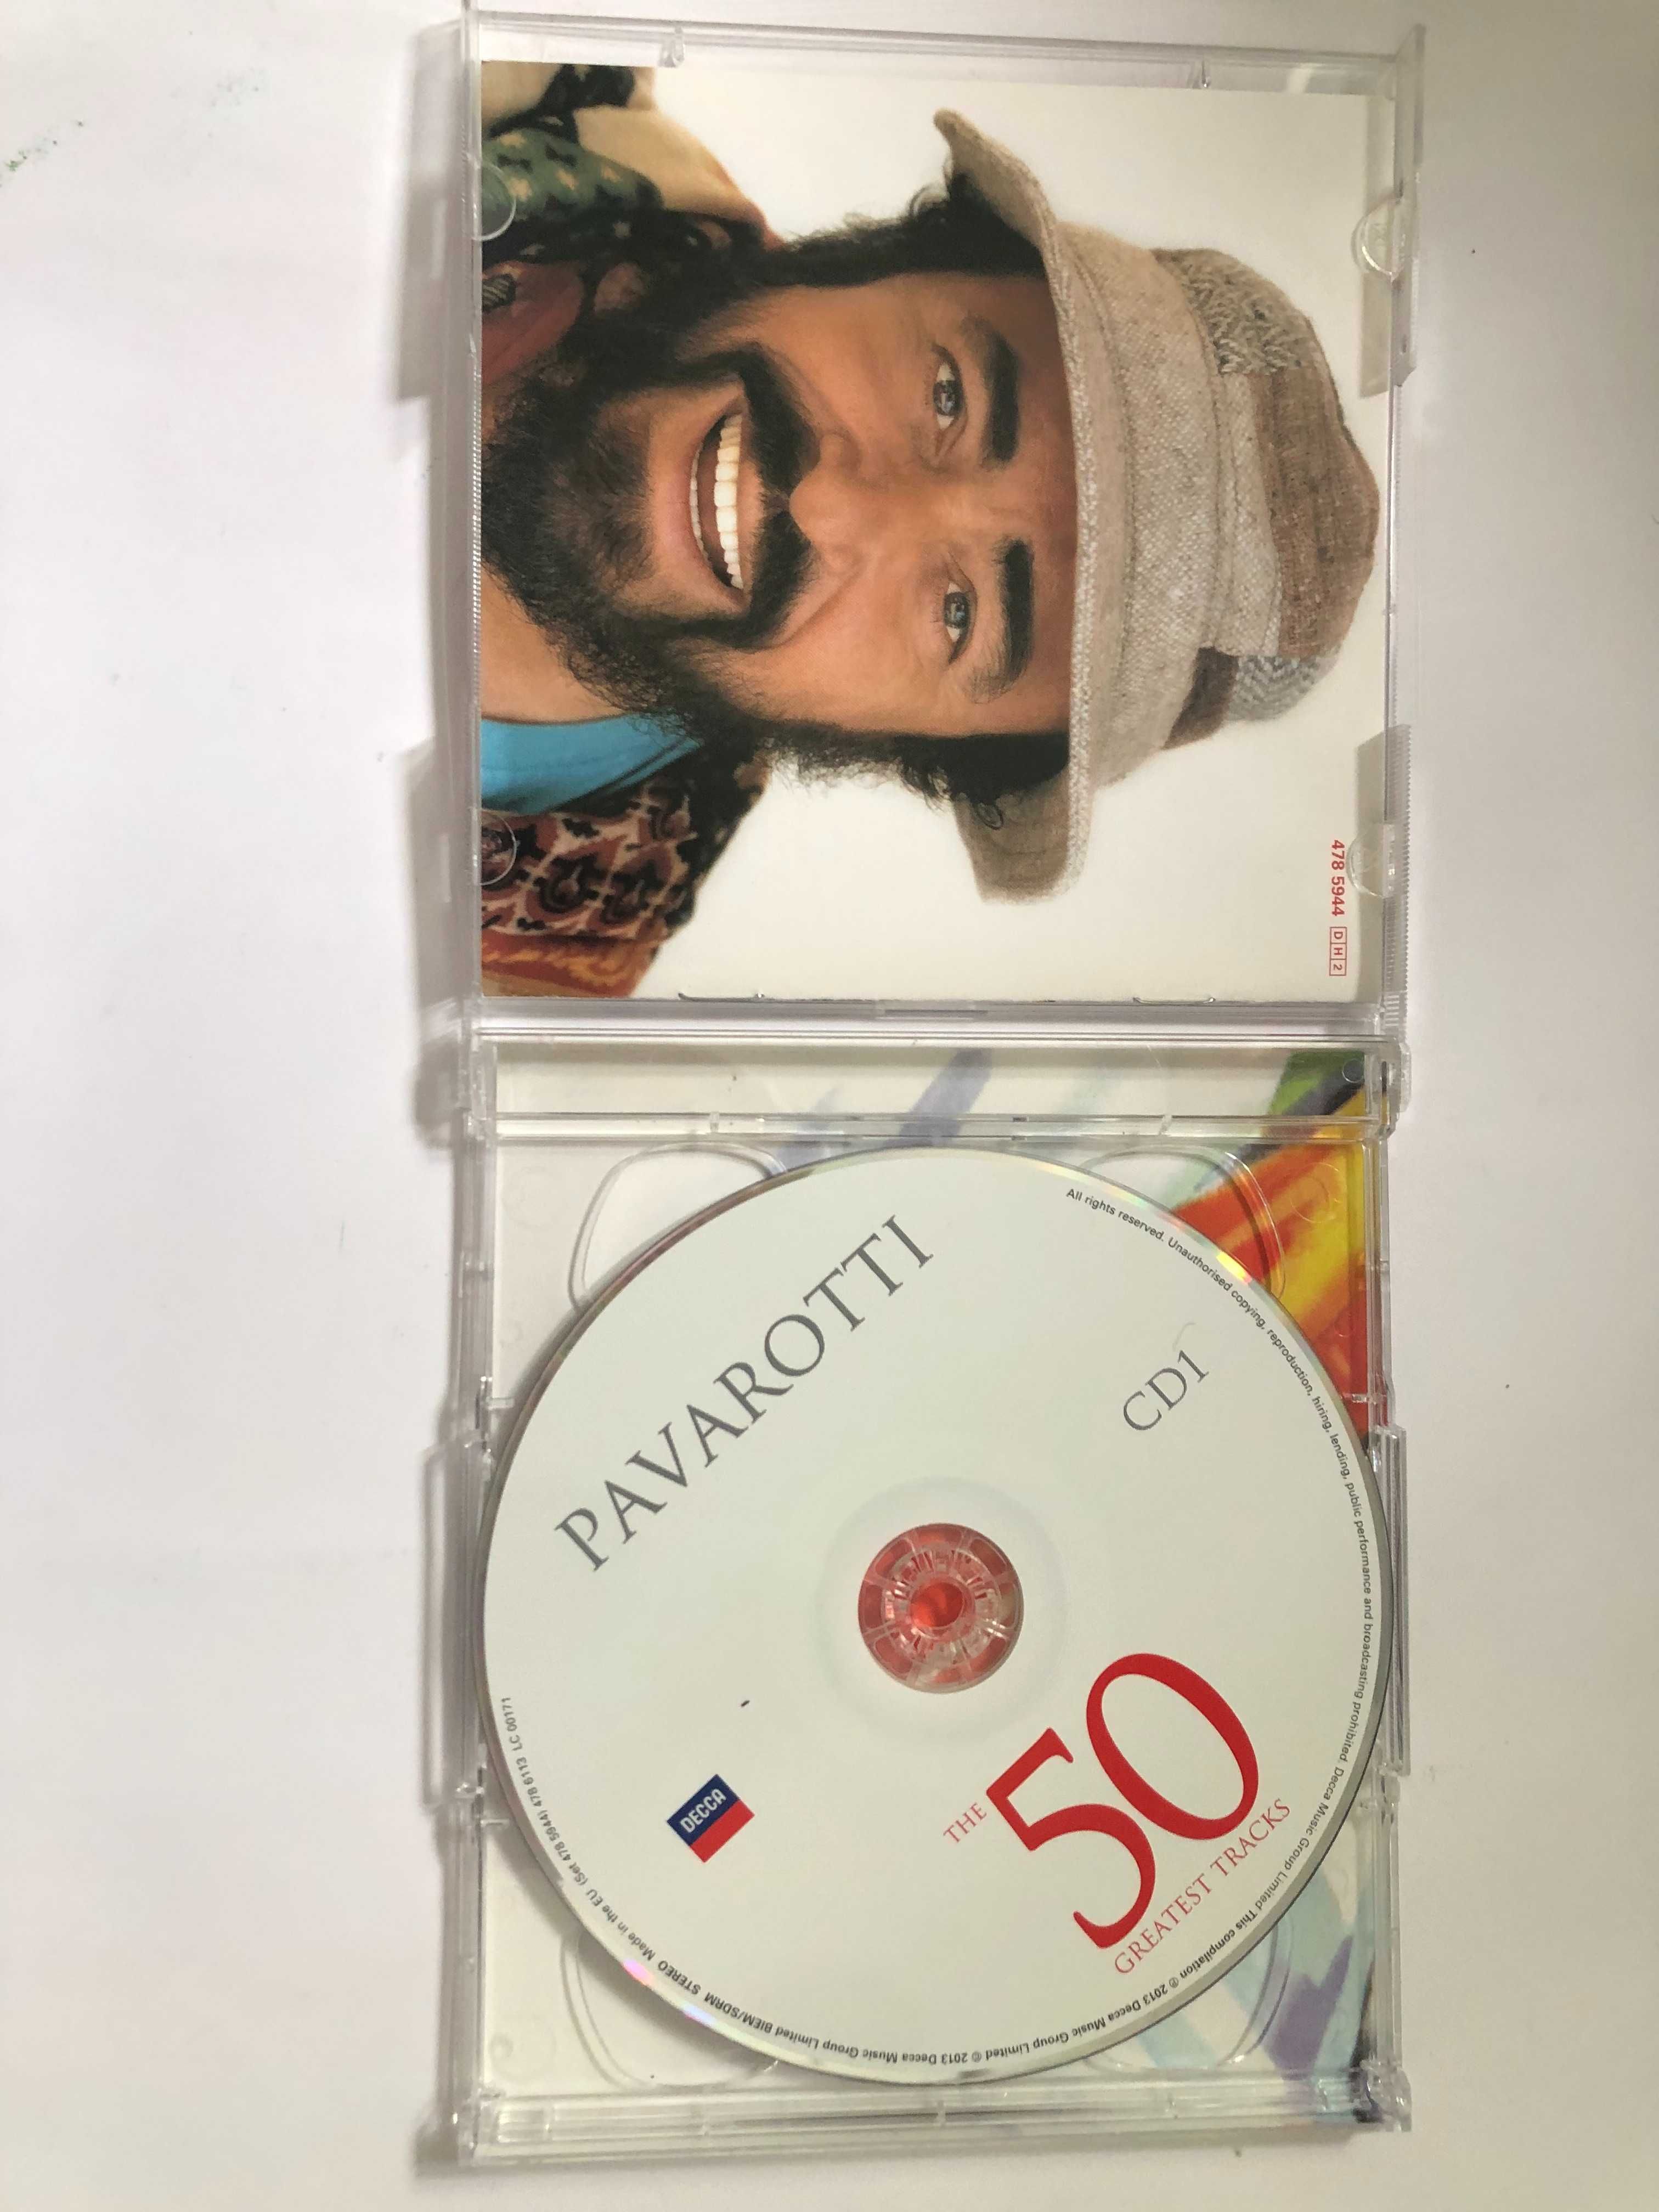 pavarotti popularne arie opera